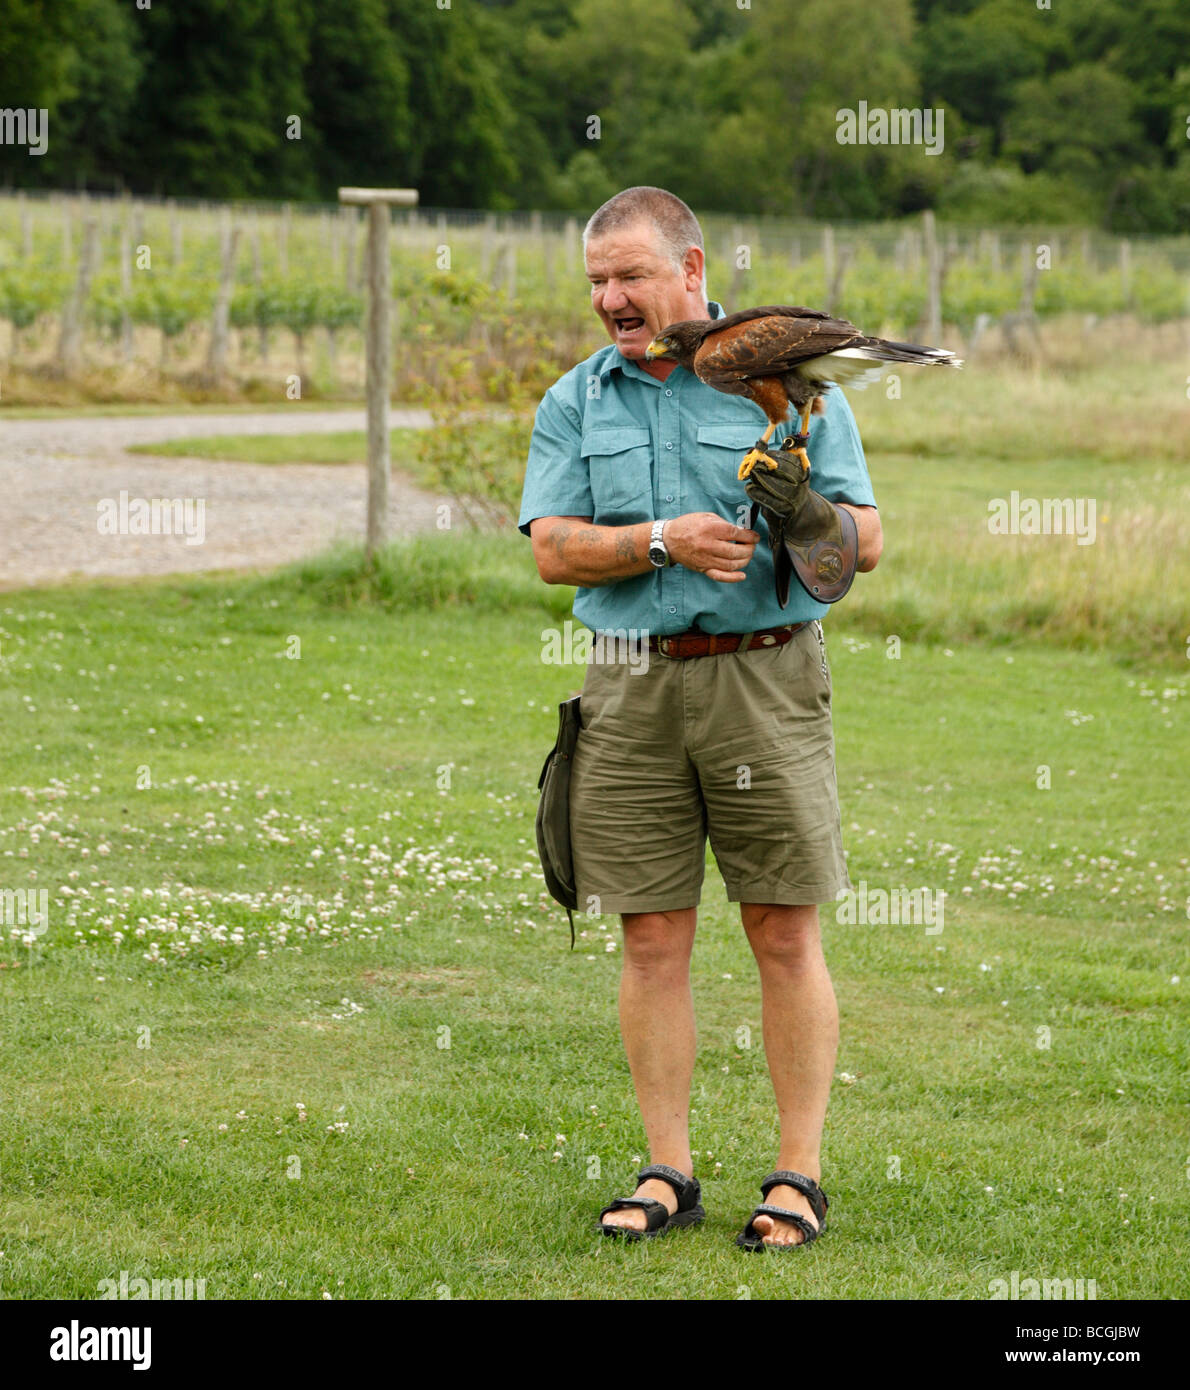 Eddie Hare, geben eine fliegende Demonstration mit einem Harris-Hawk. Groombridge, Kent, England, UK. Stockfoto